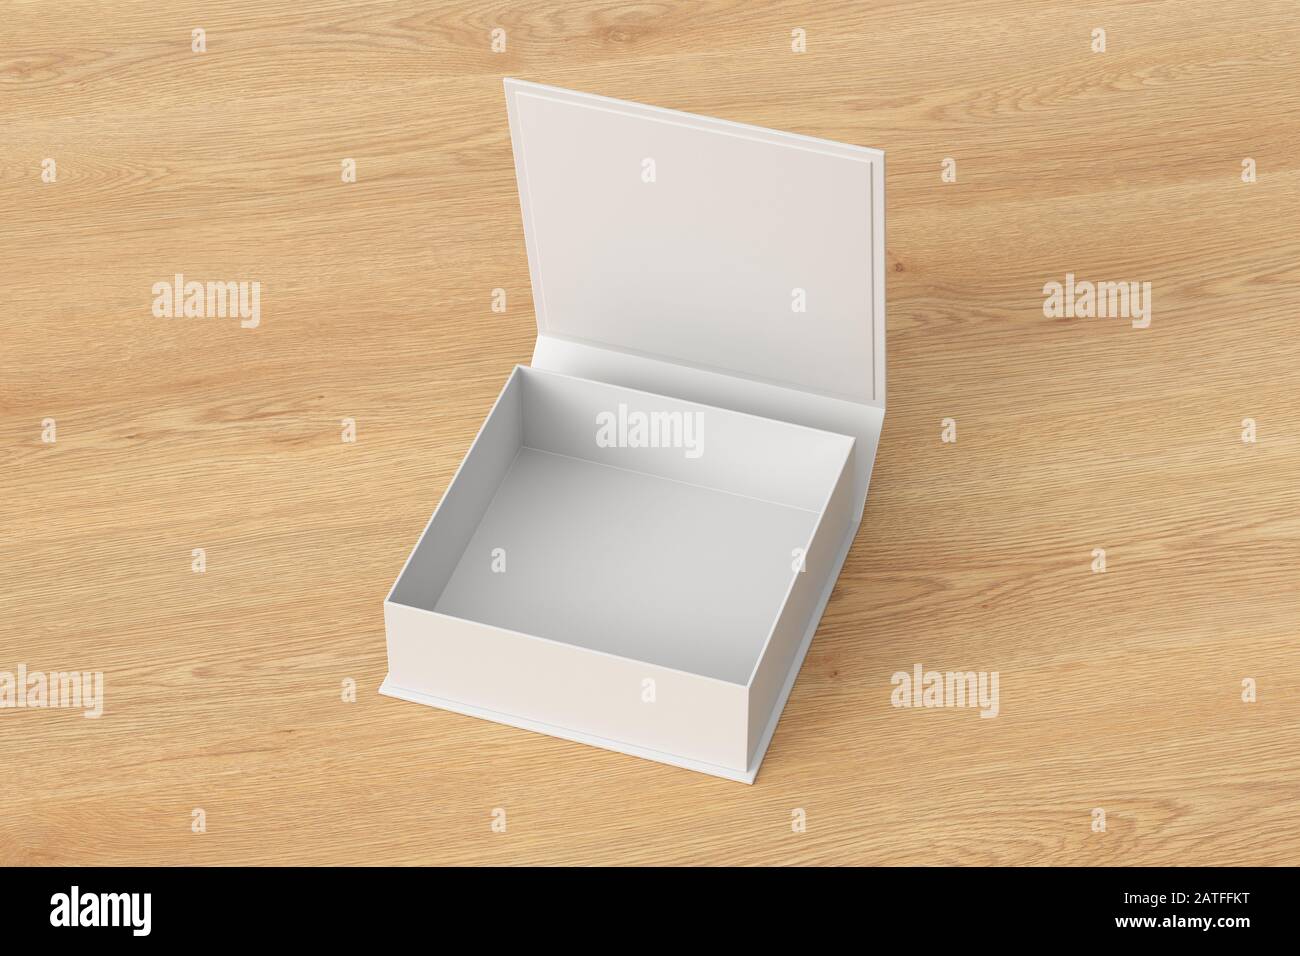 Boîte cadeau carrée blanche et plate avec couvercle à rabat à charnière  ouvert sur fond en bois. Masque autour de la maquette de la boîte.  illustration tridimensionnelle Photo Stock - Alamy